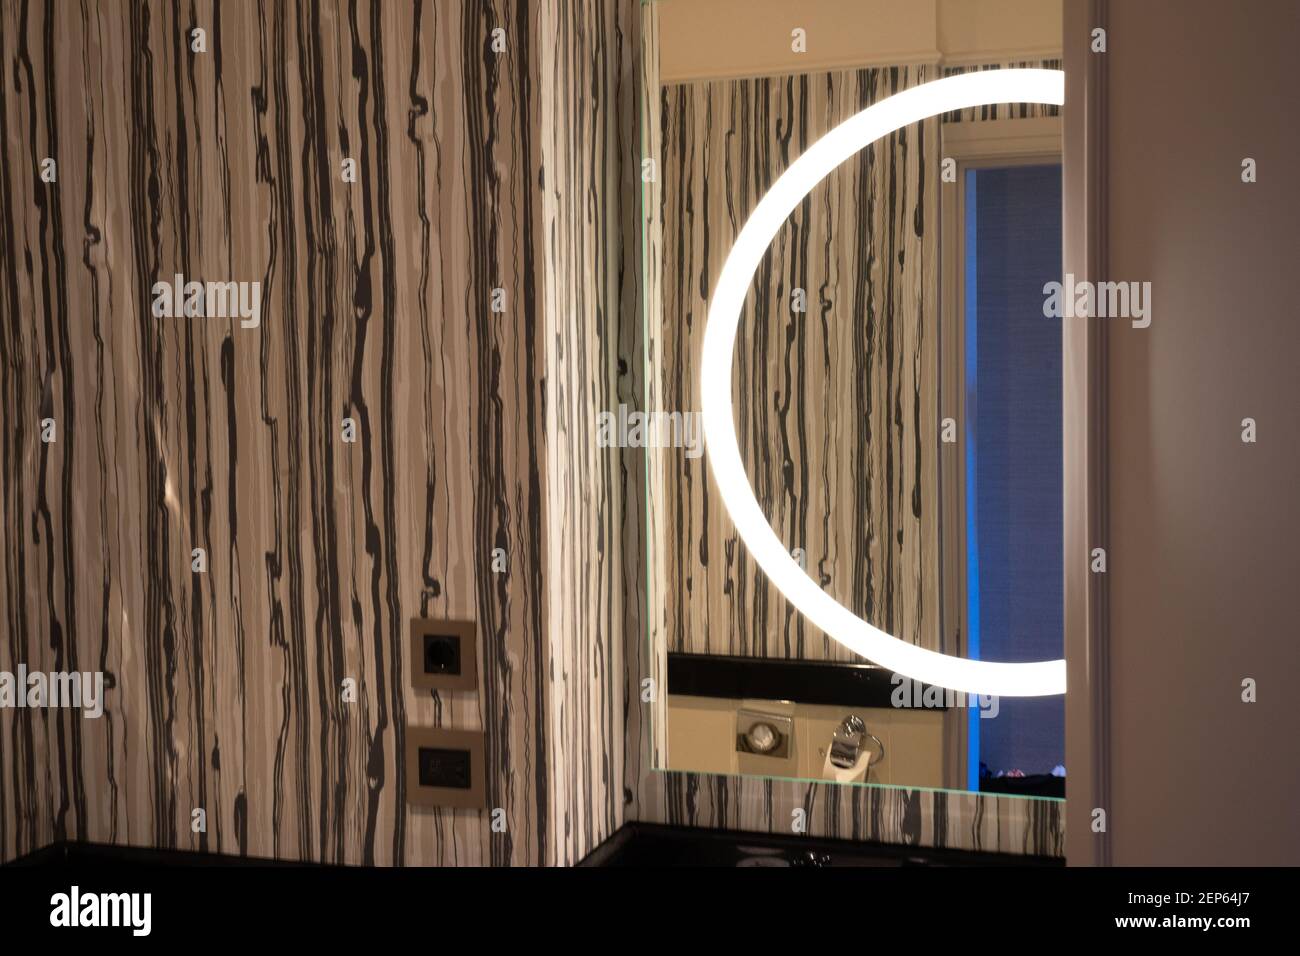 Decorazione moderna del bagno, che include lo spazio sopra il lavandino, lampada rotonda riflessa nello specchio, motivo ornamentale marrone su una parete Foto Stock